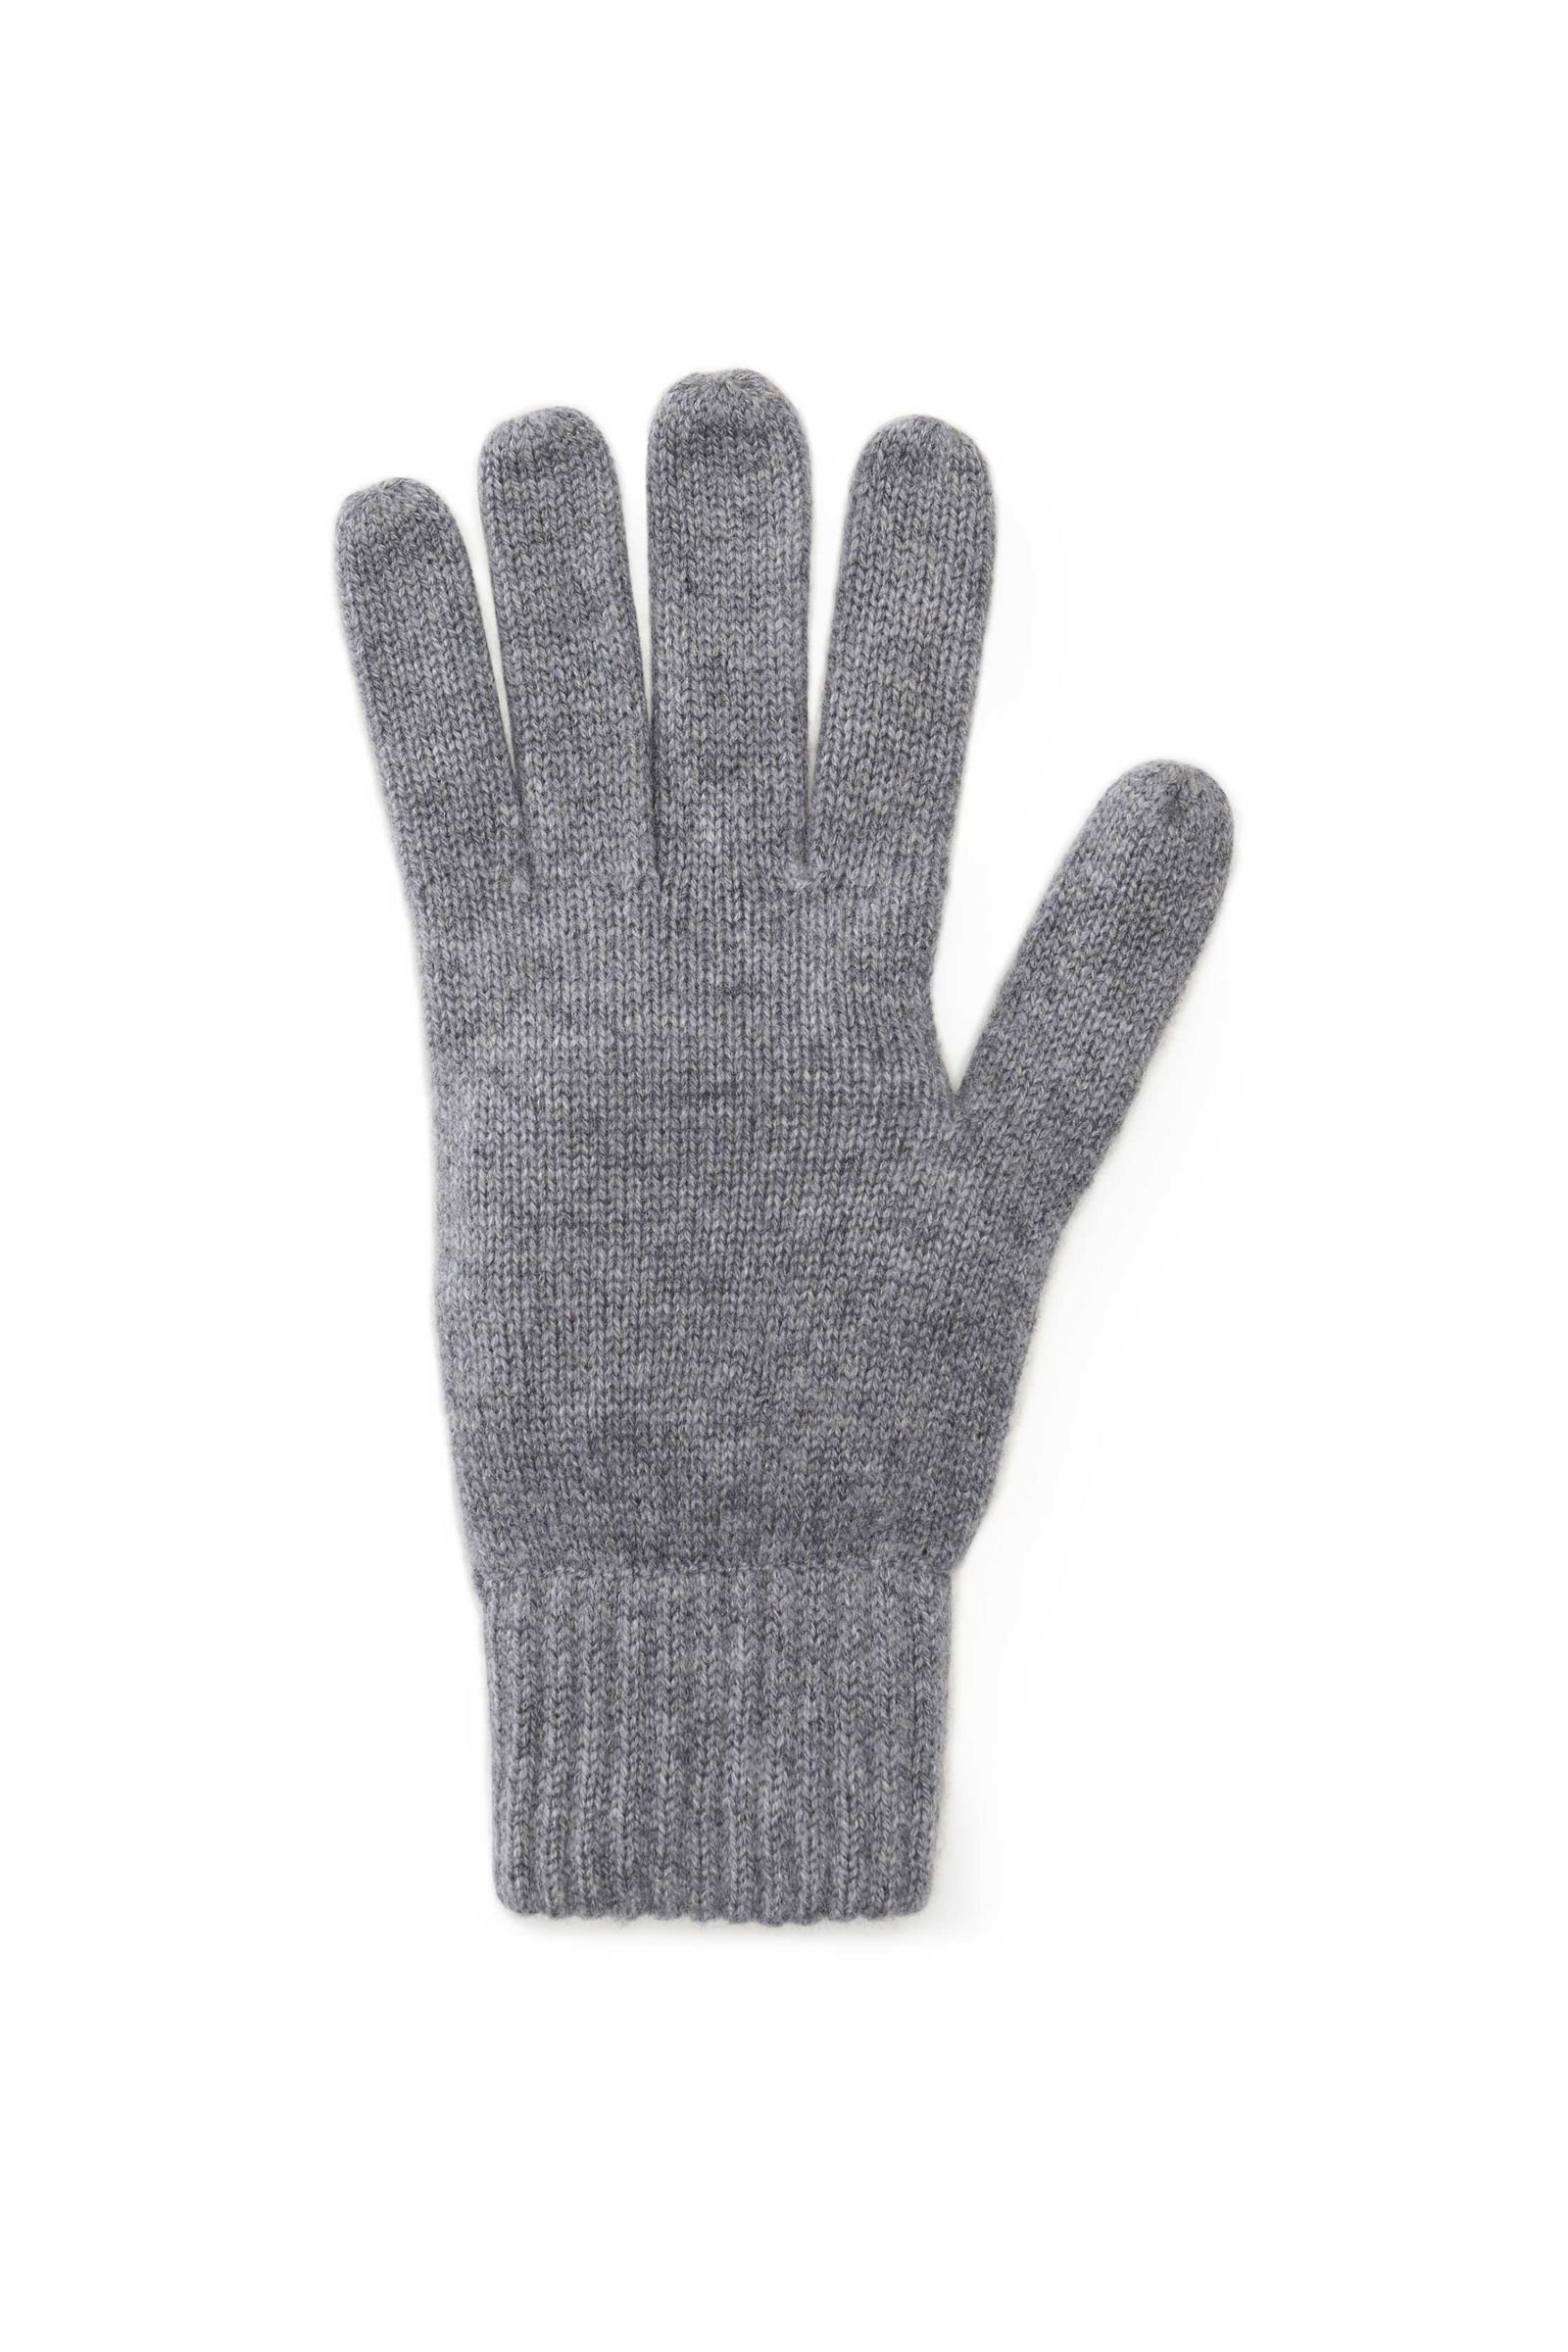 Cashmere gloves grey